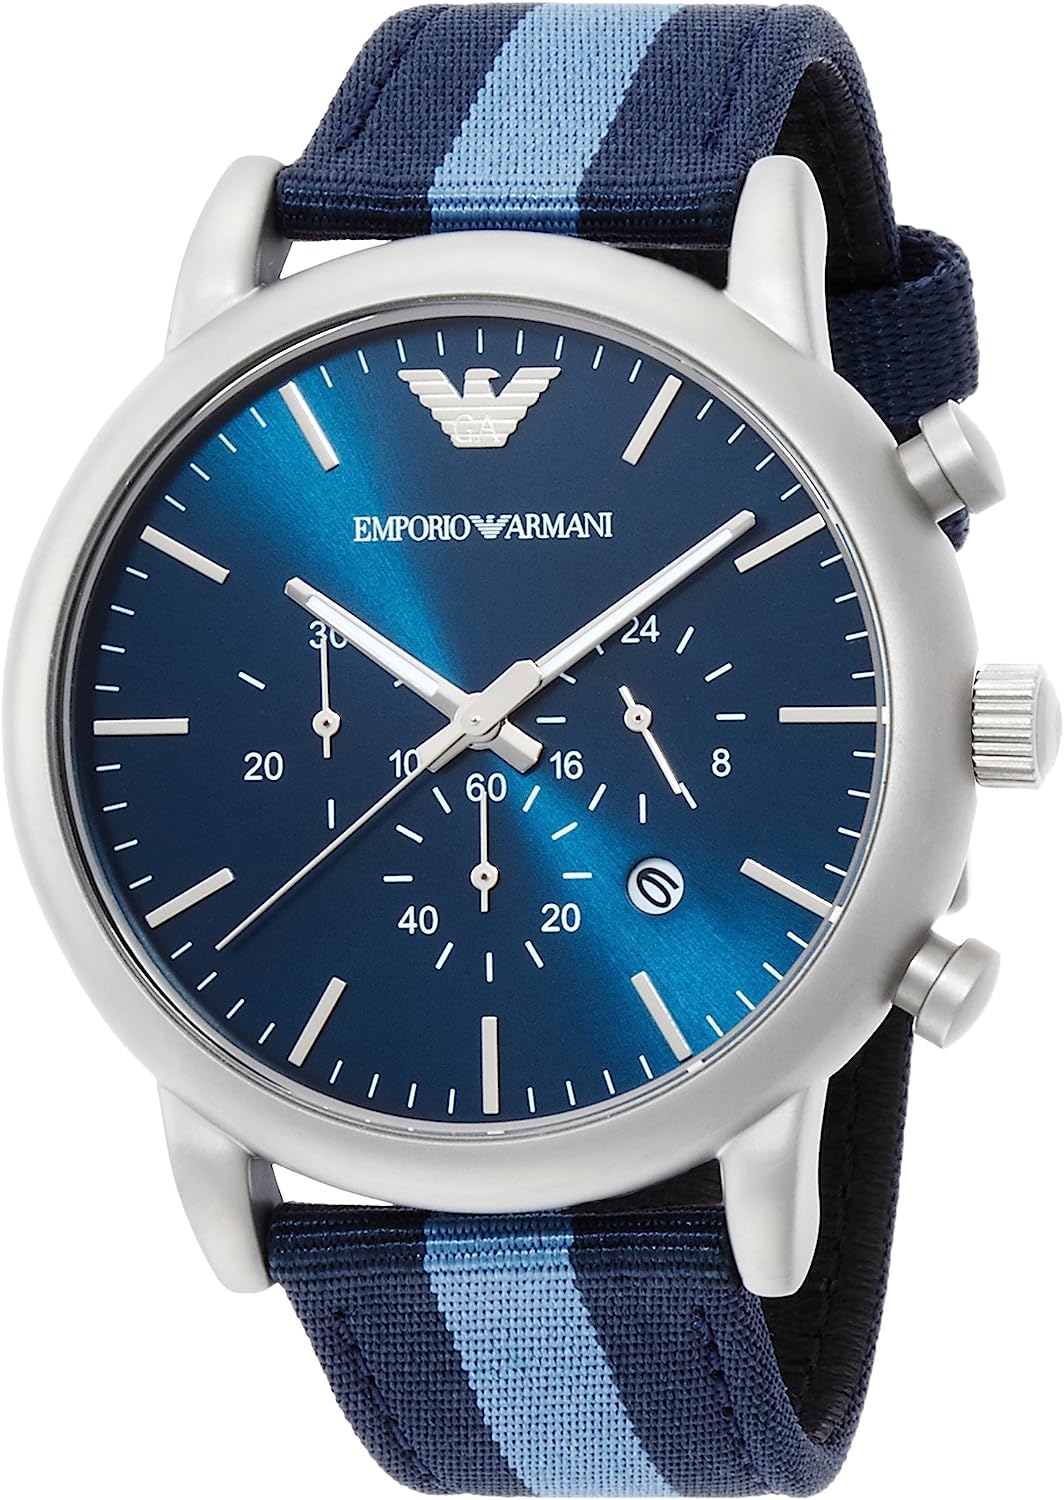 腕時計 メンズ ブルー シルバー エンポリオ アルマーニ クロノグラフ アビエーター ネイビー AR1949 EMPORIO ARMANI 時計 LUIGI